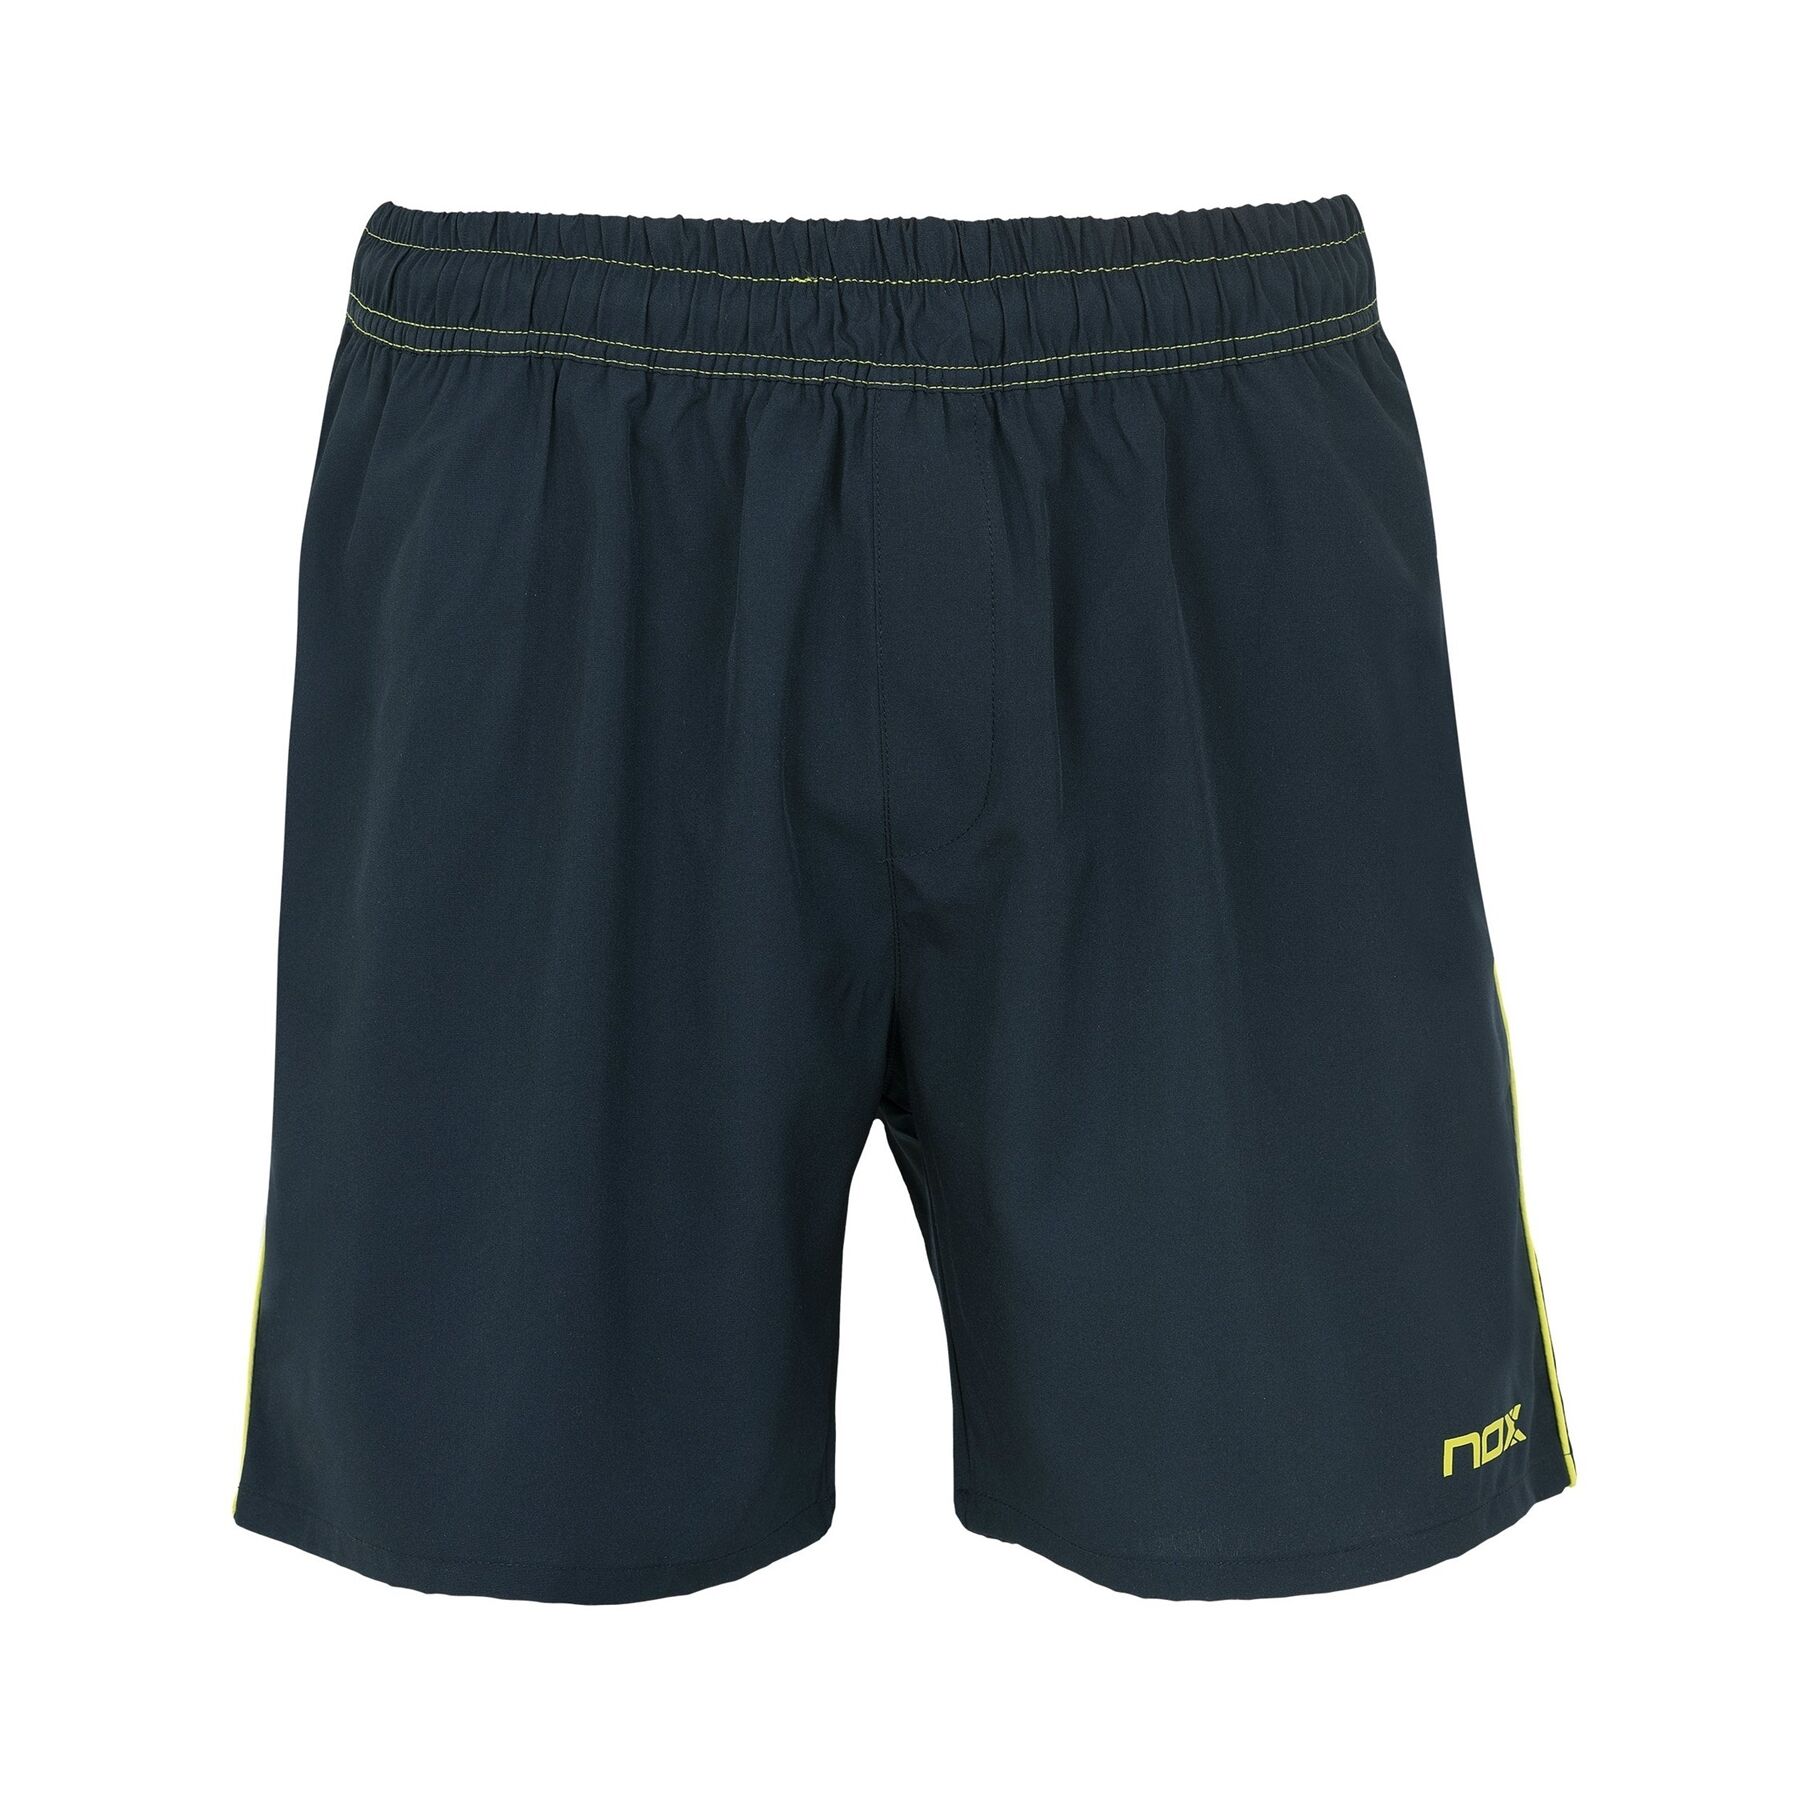 Nox Men's Padel Pro Shorts Navy L